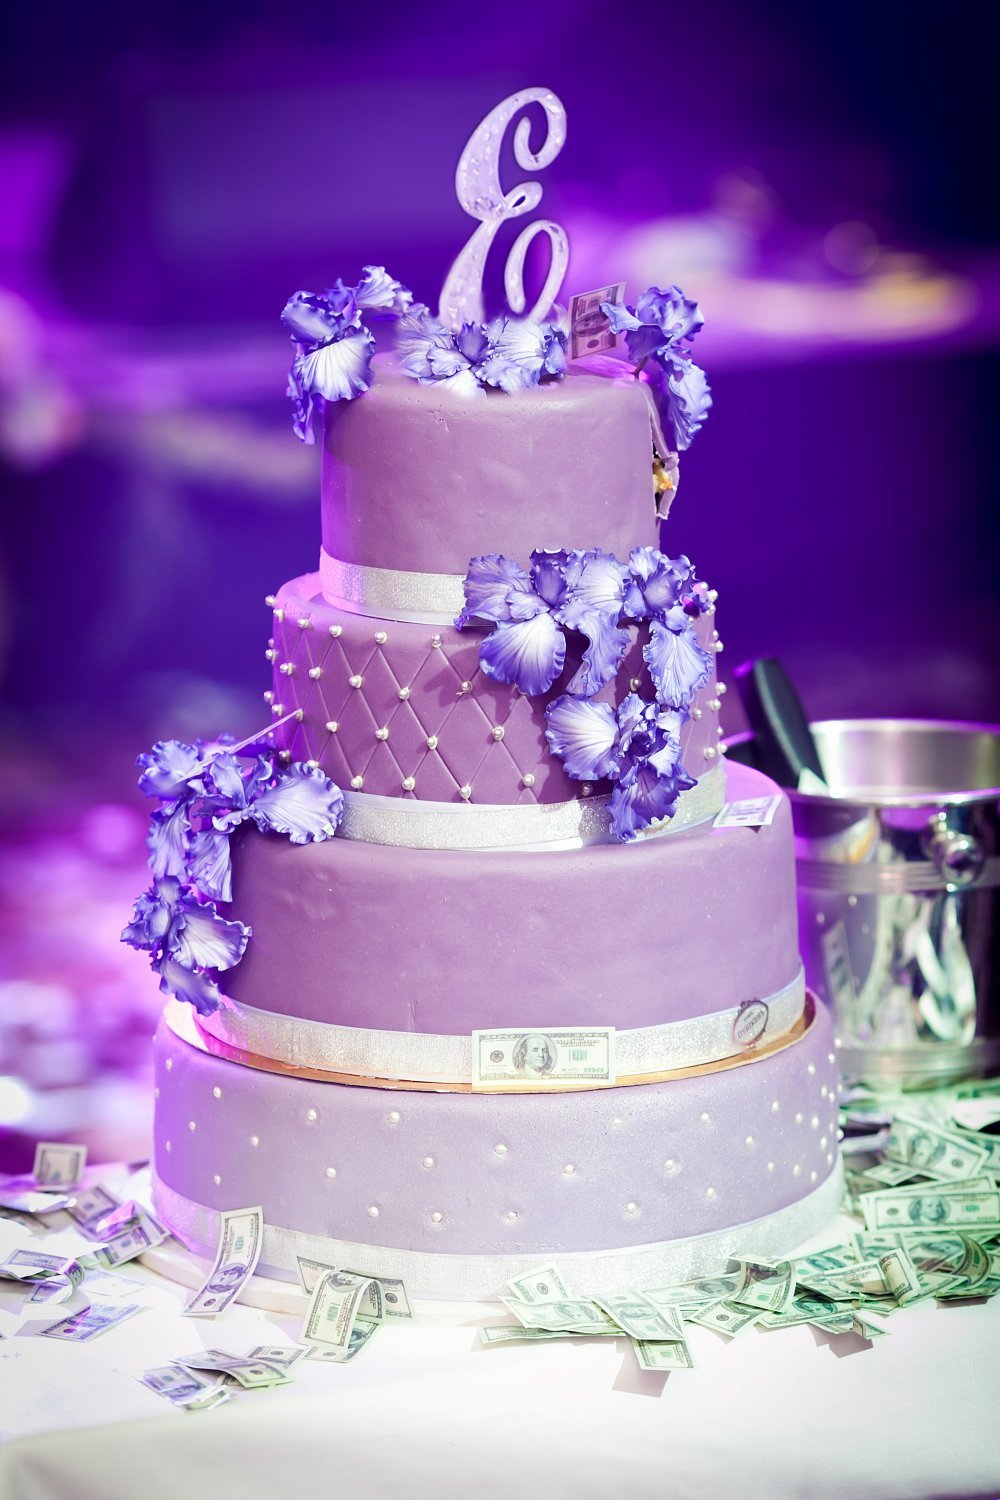 Фиолетовый торт на день рождения